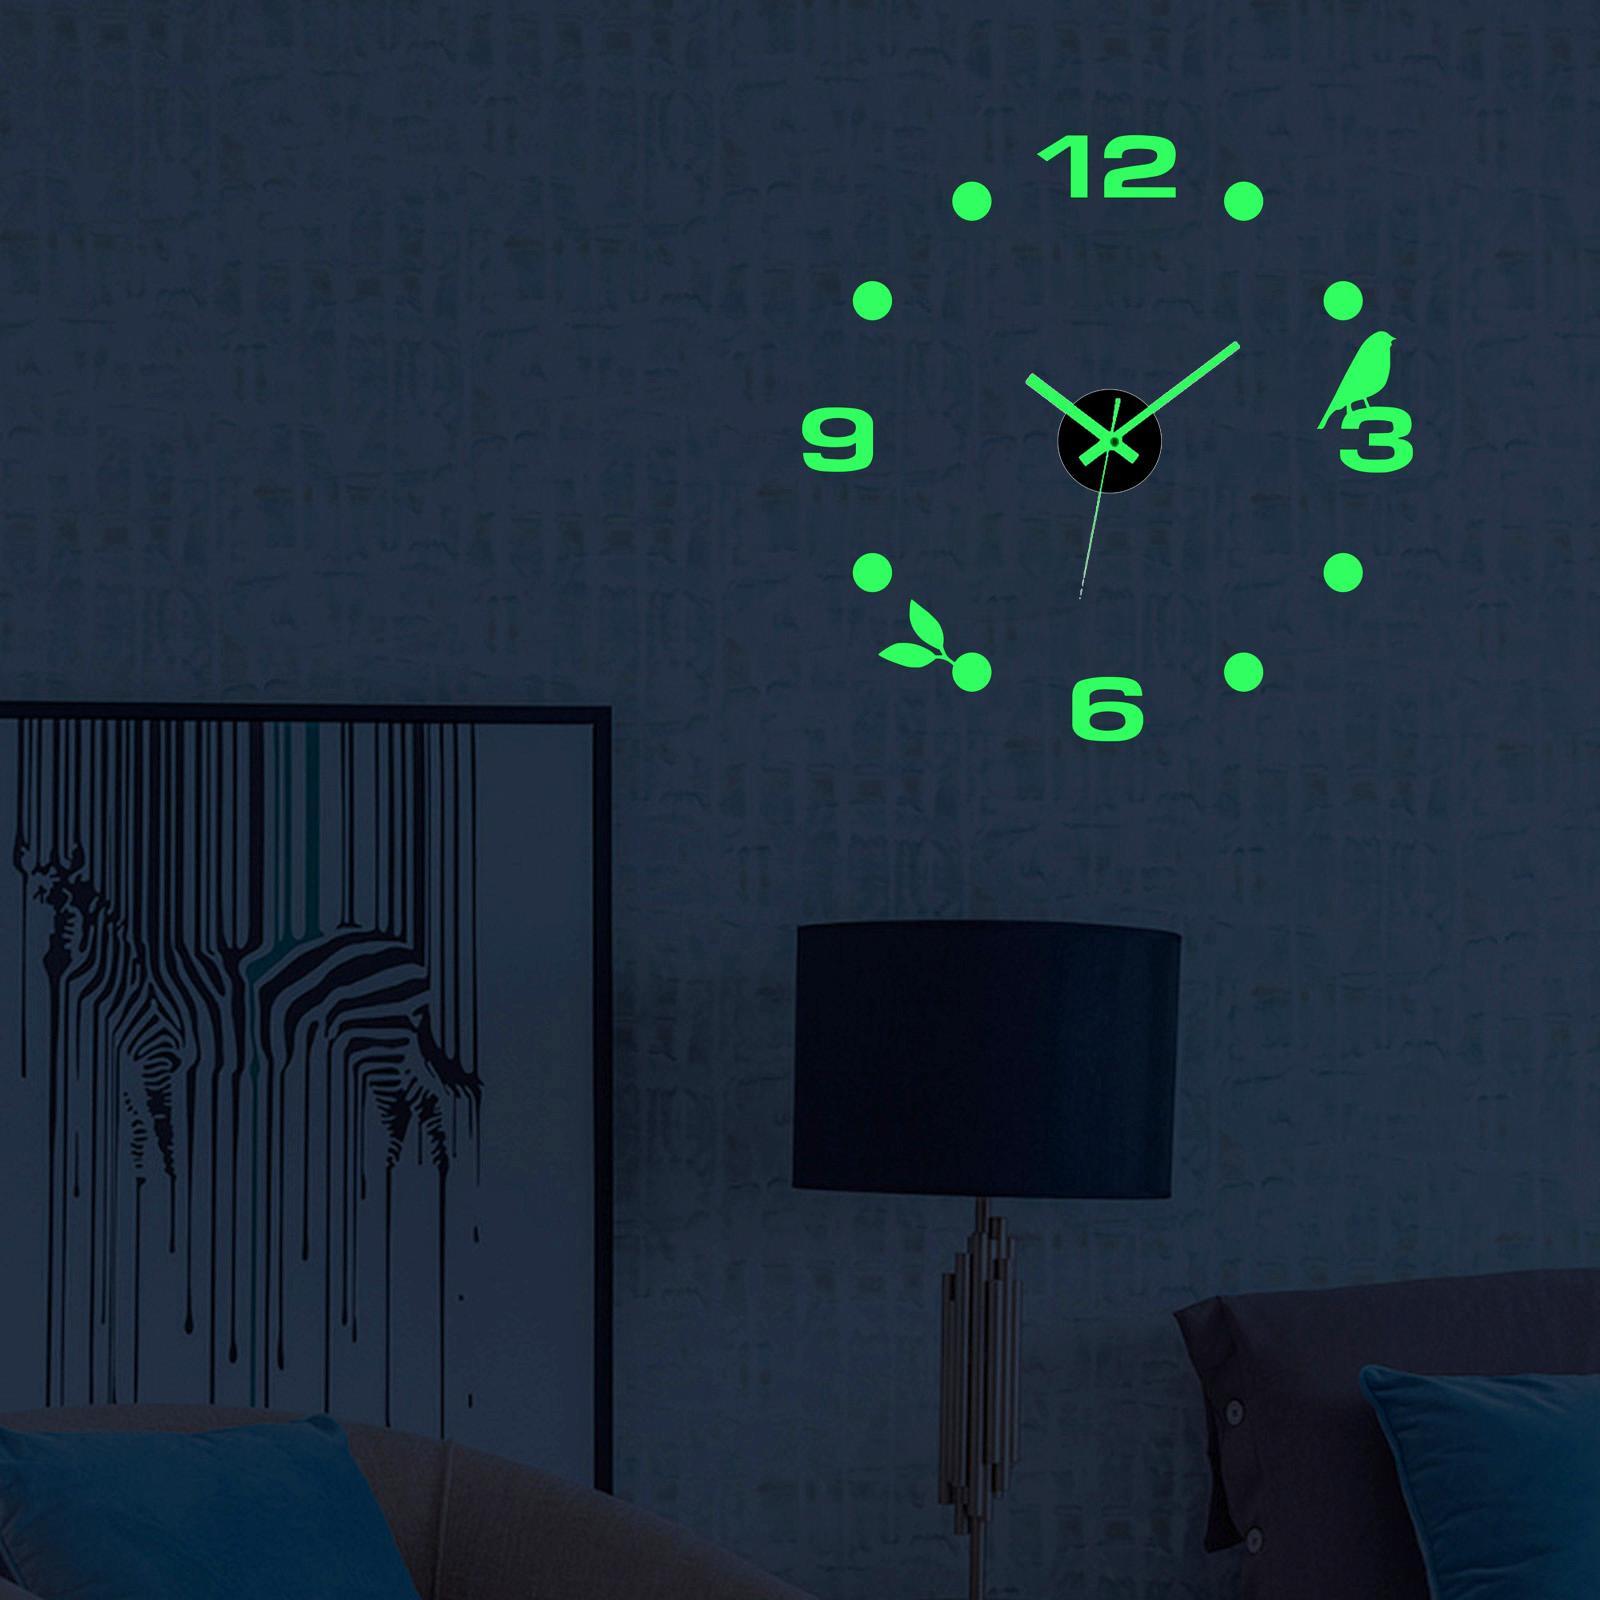 Modern Luminous Wall Clock Stickers 3D DIY Wall Clocks Frameless for Decor